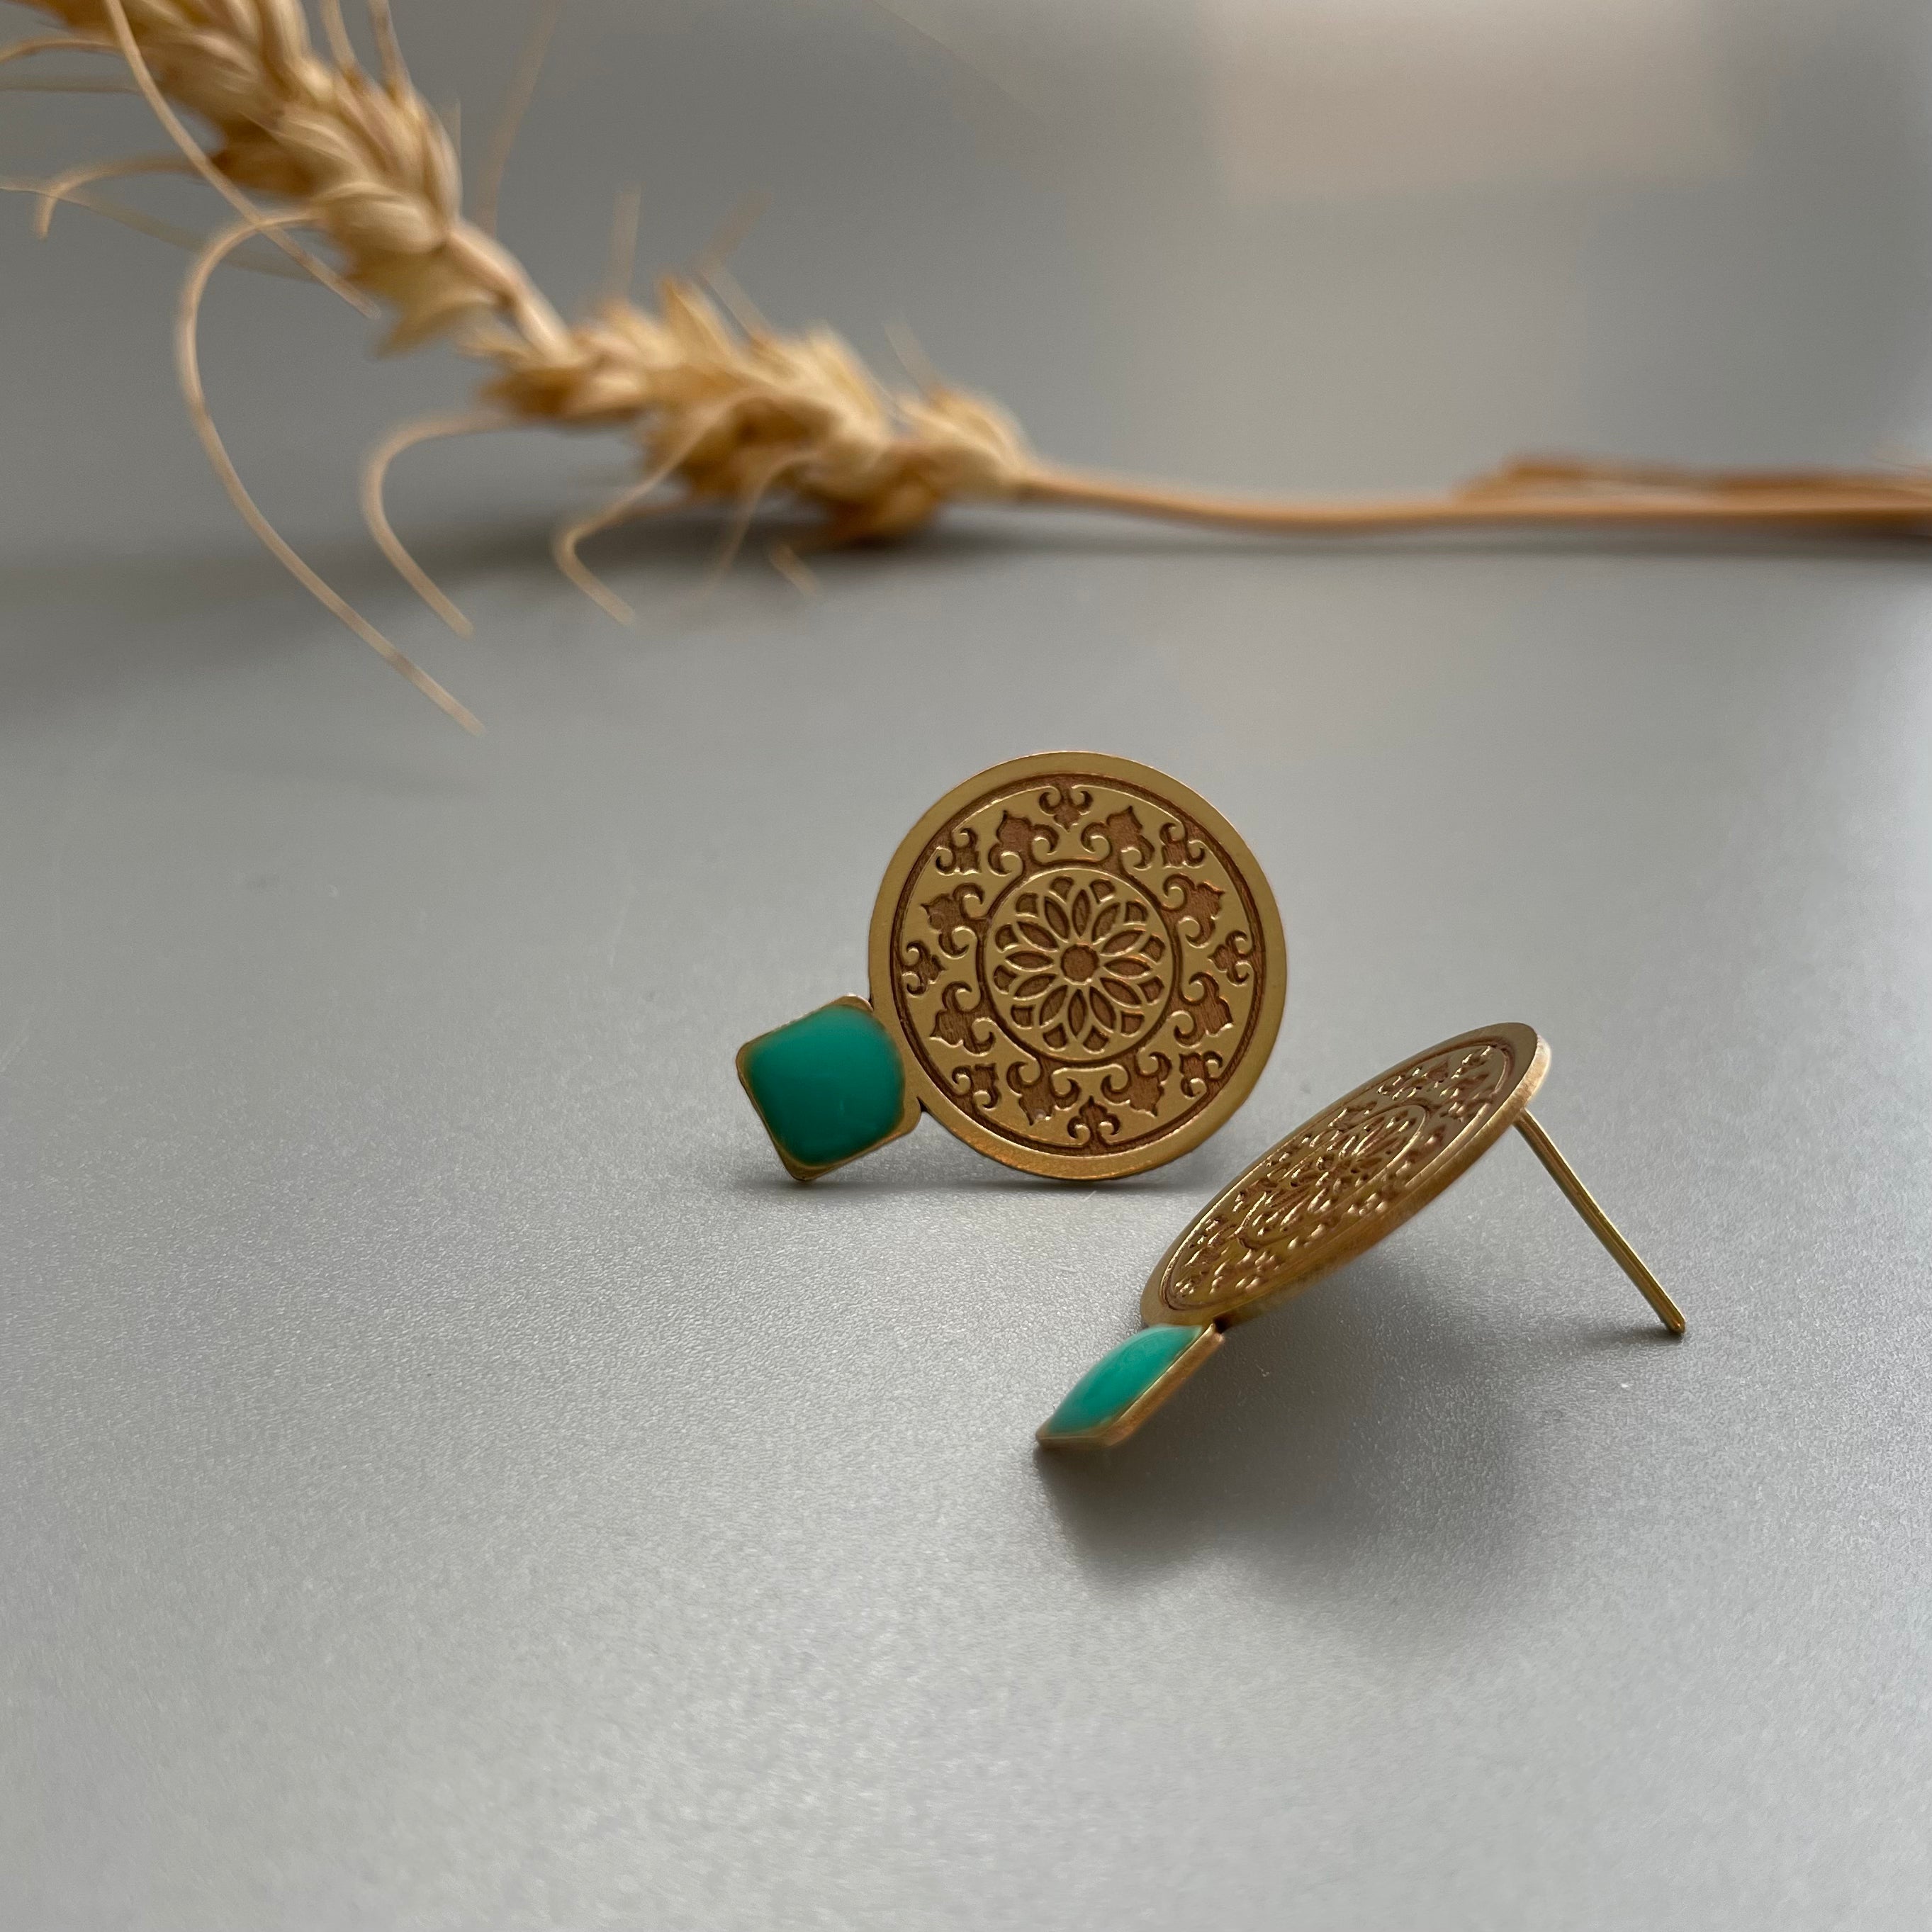 Handmade Brass Earrings with Geometric Pattern - AFRA ART GALLERY